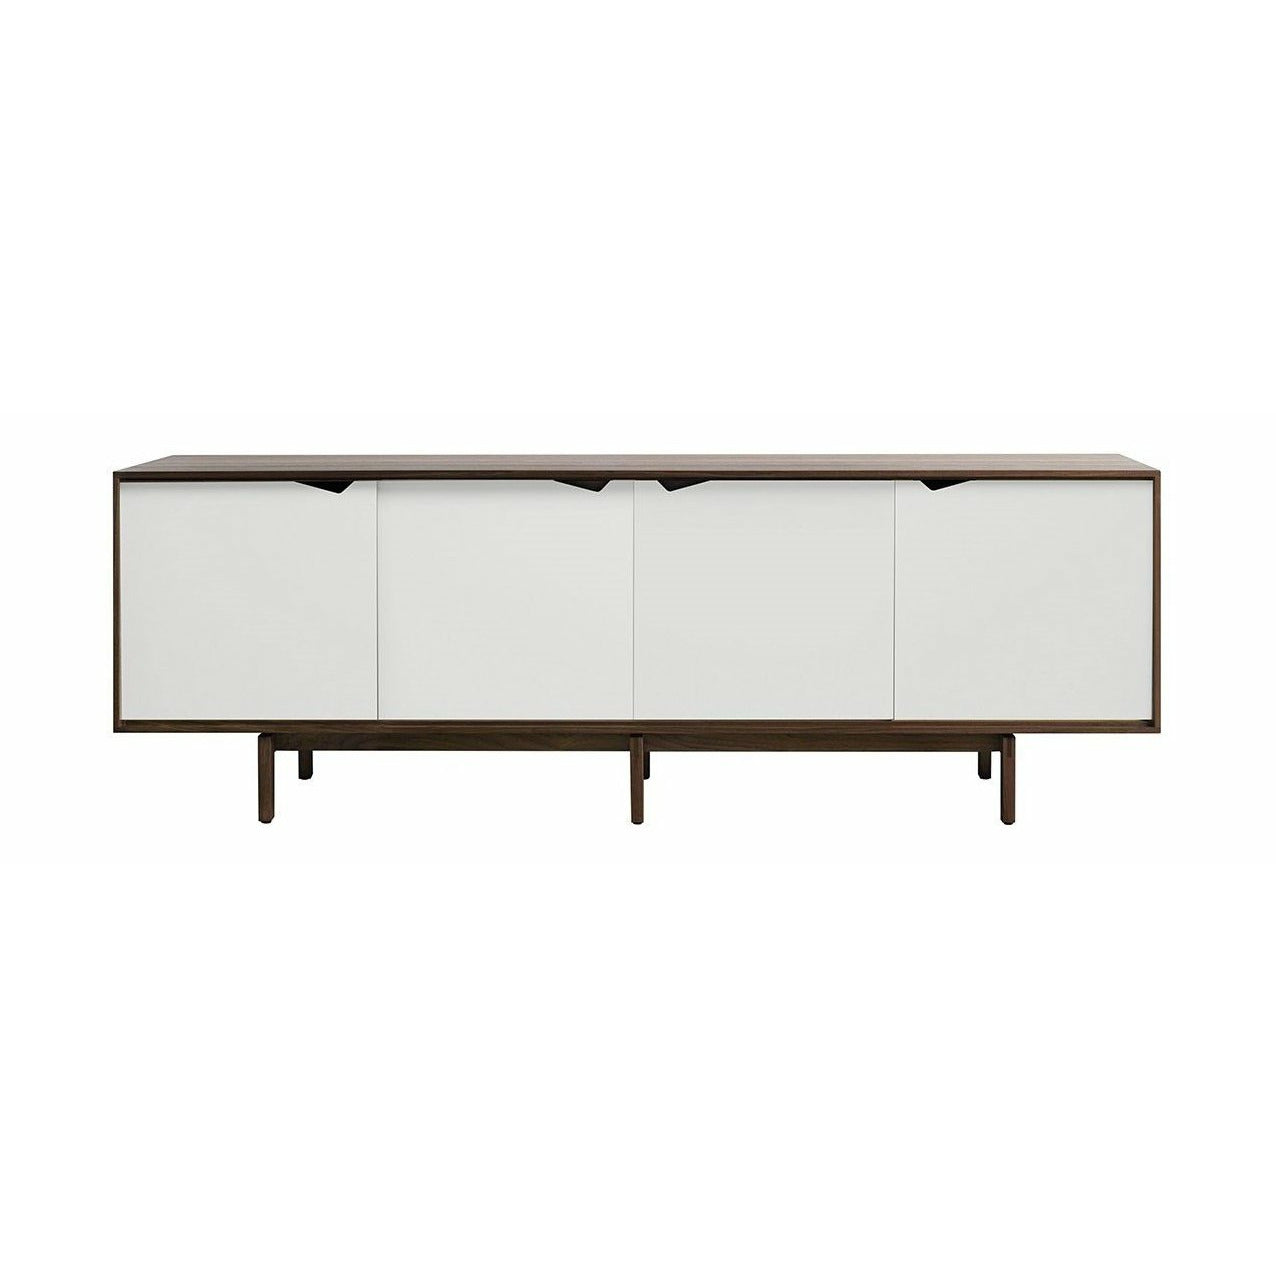 Annersen Furniture S1 Batboard noix, tiroirs blancs, 200 cm